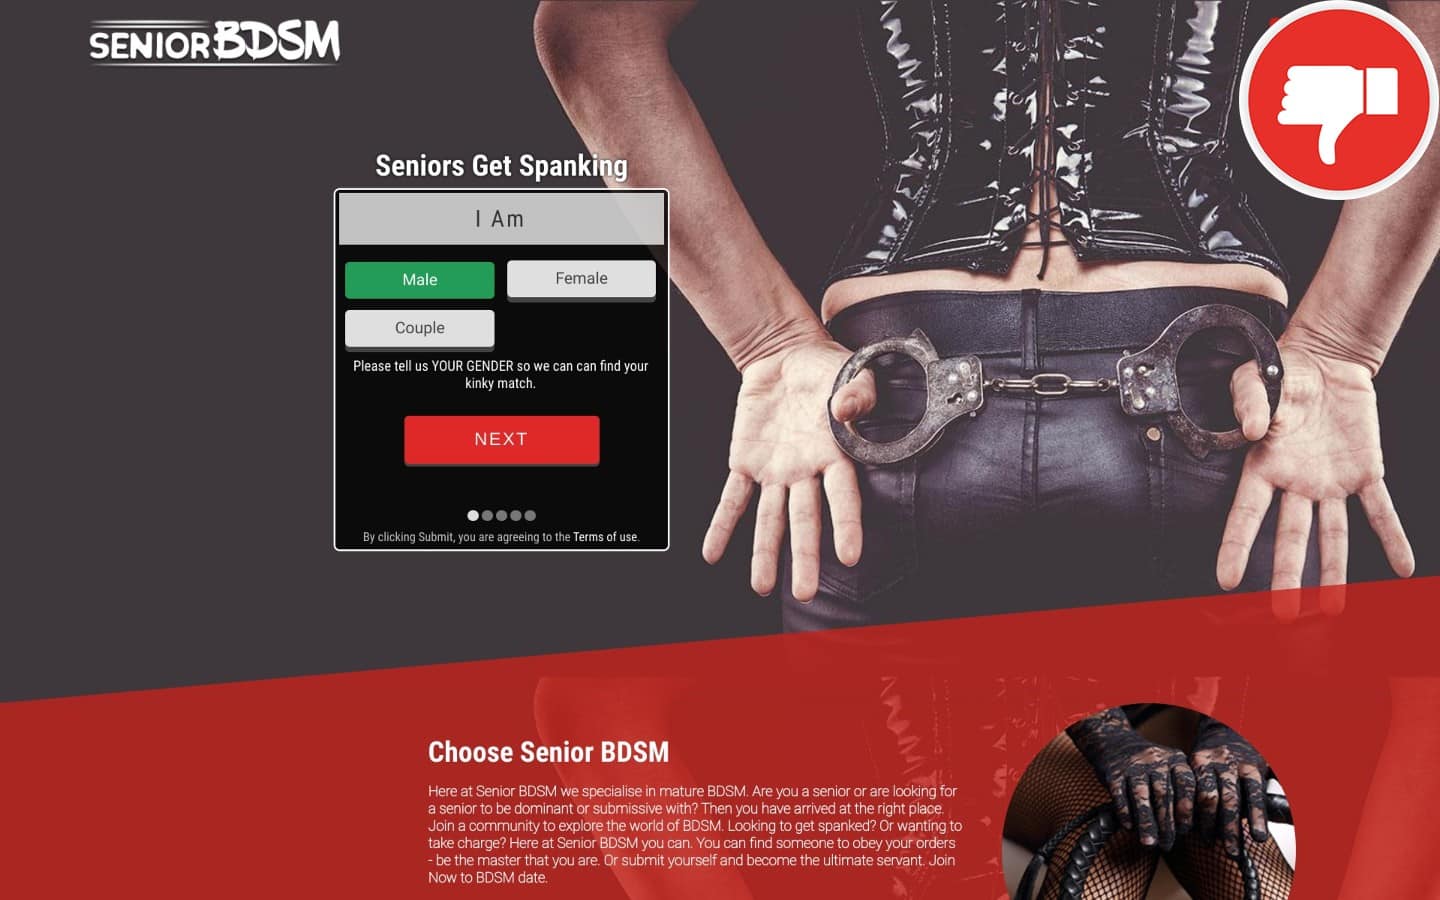 Review seniorbdsm.com scam